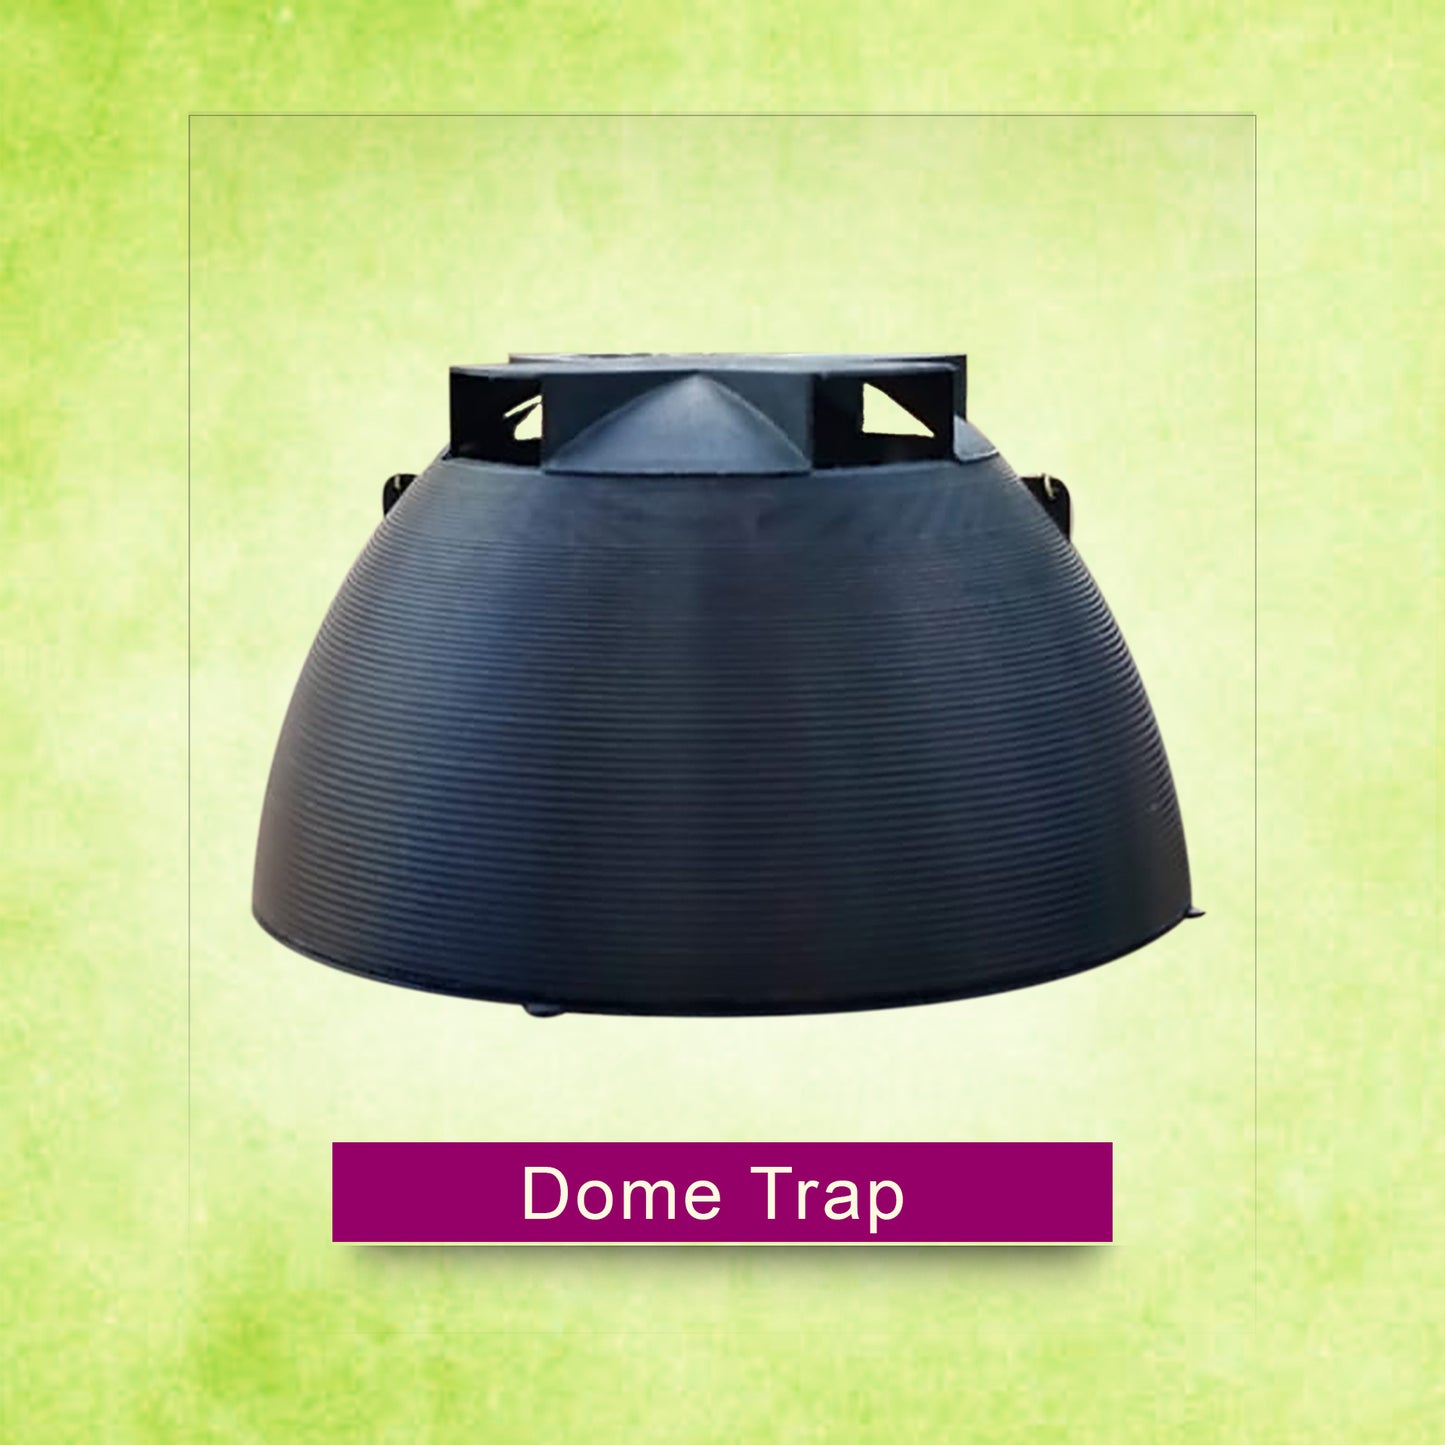 Dome Trap